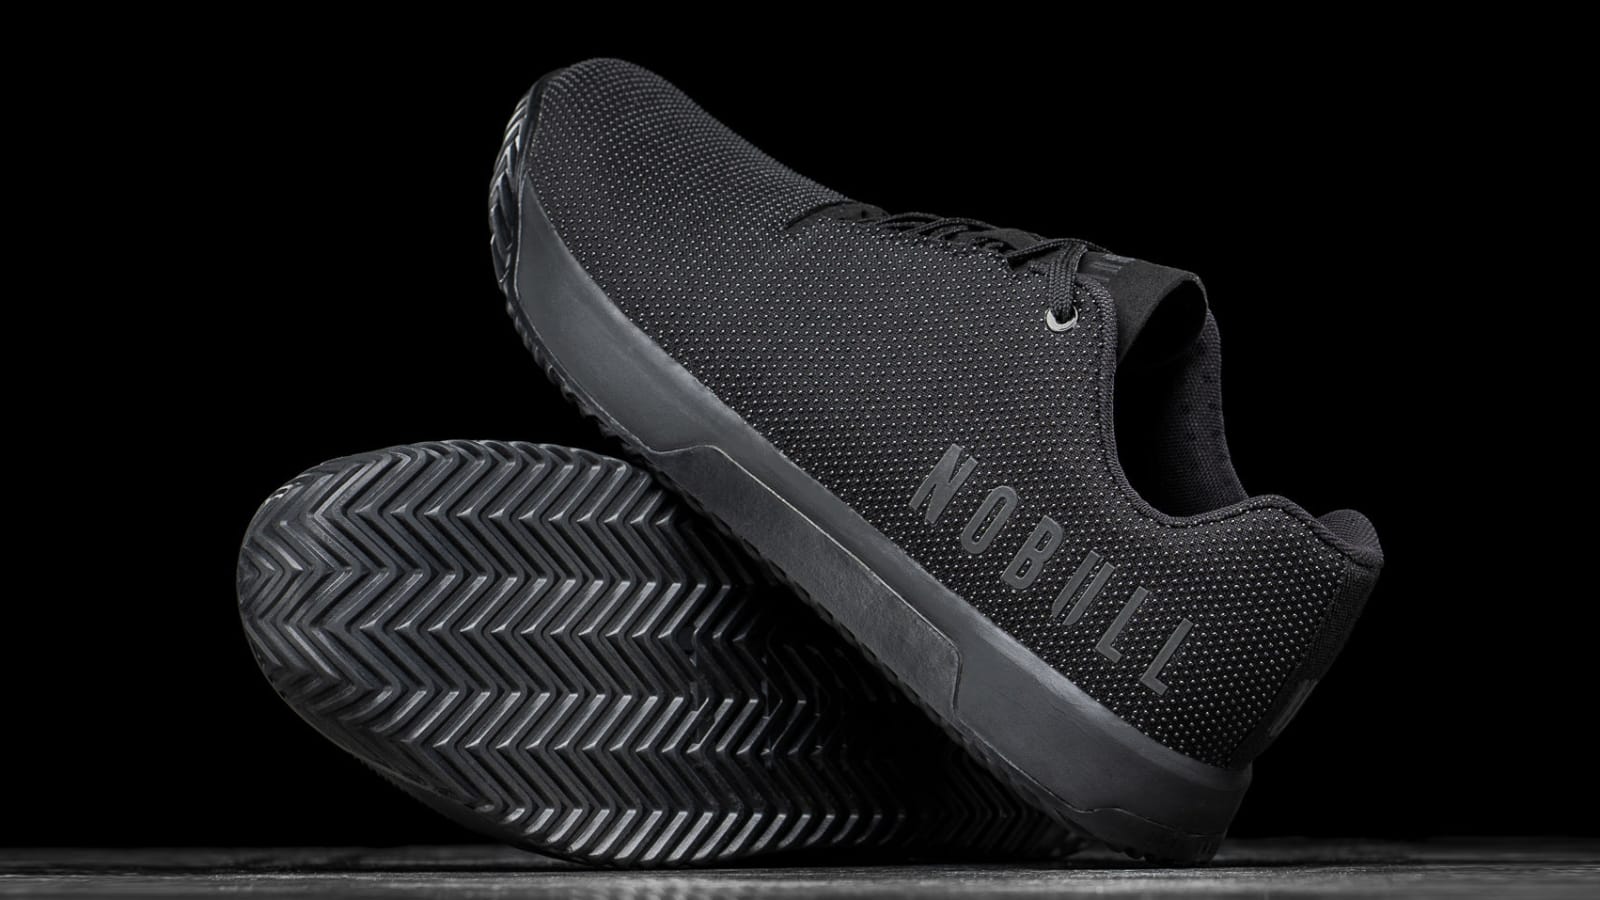 MEN'S BLACK TRAINER  Black Training Shoes – NOBULL